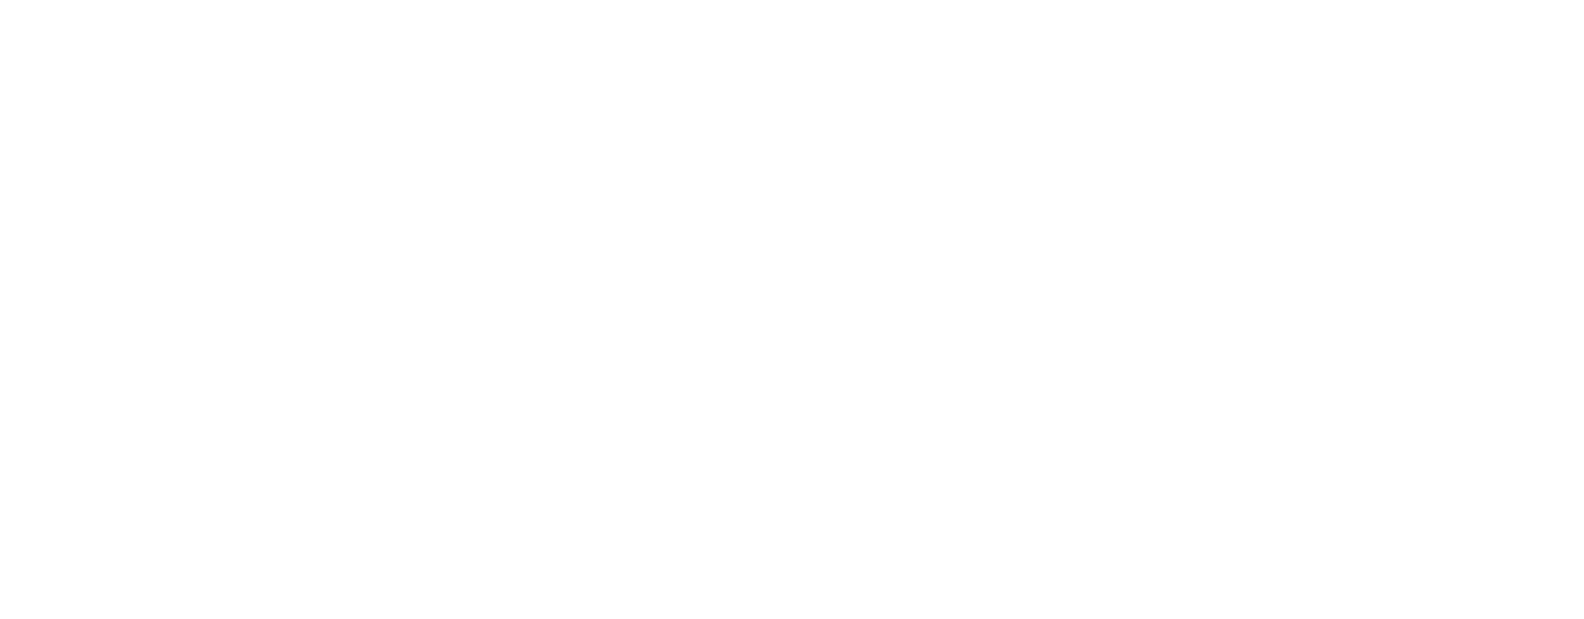 Casey's General Stores
 logo grand pour les fonds sombres (PNG transparent)